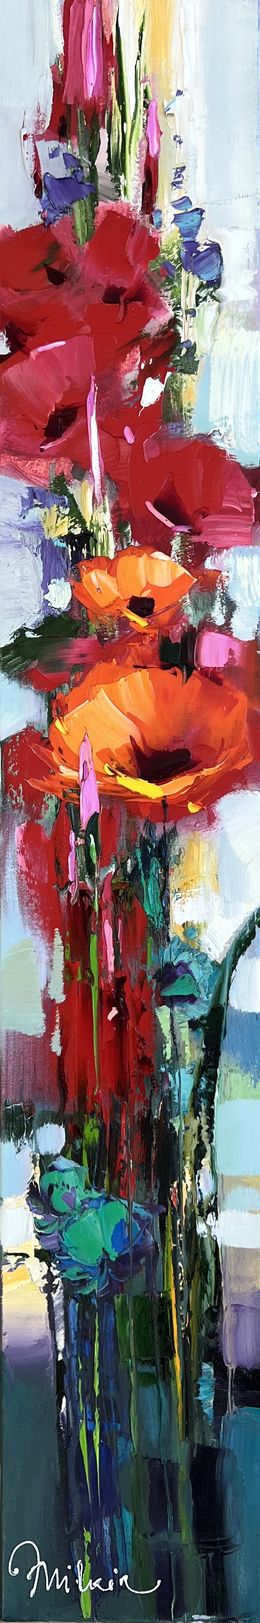 Flowers, Michael Milkin